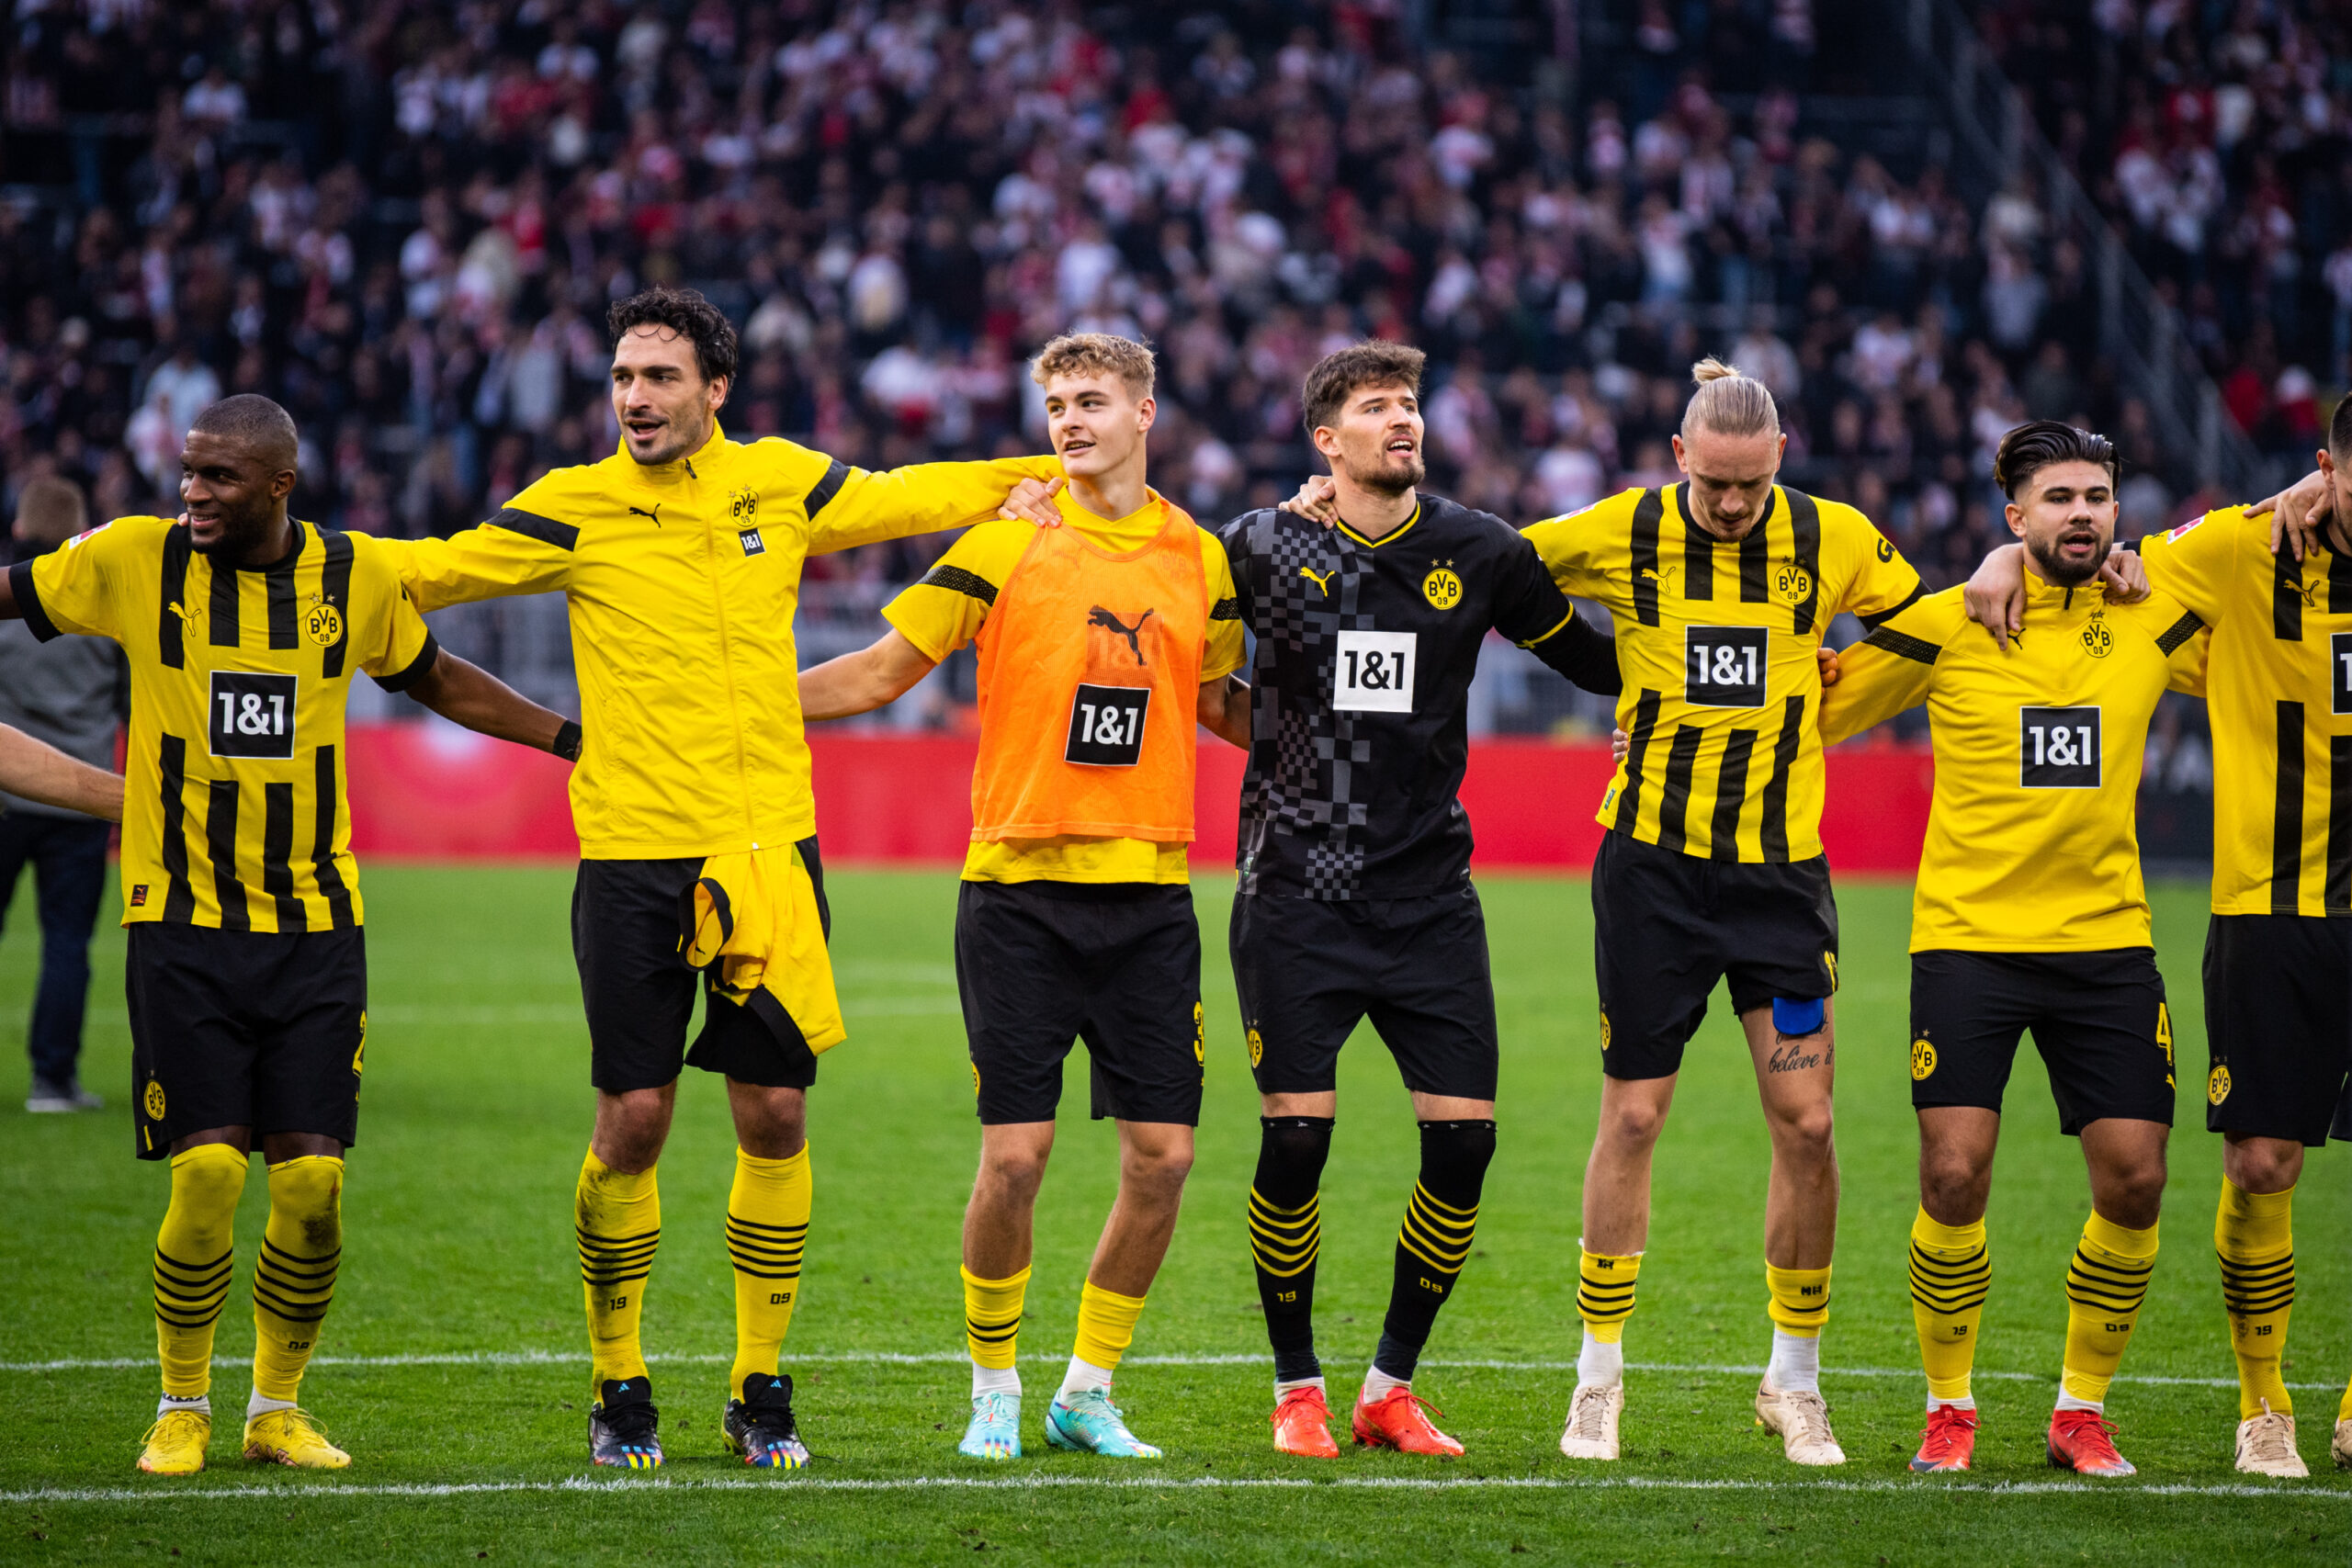 Giới thiệu đôi nét về CLB Borussia Dortmund